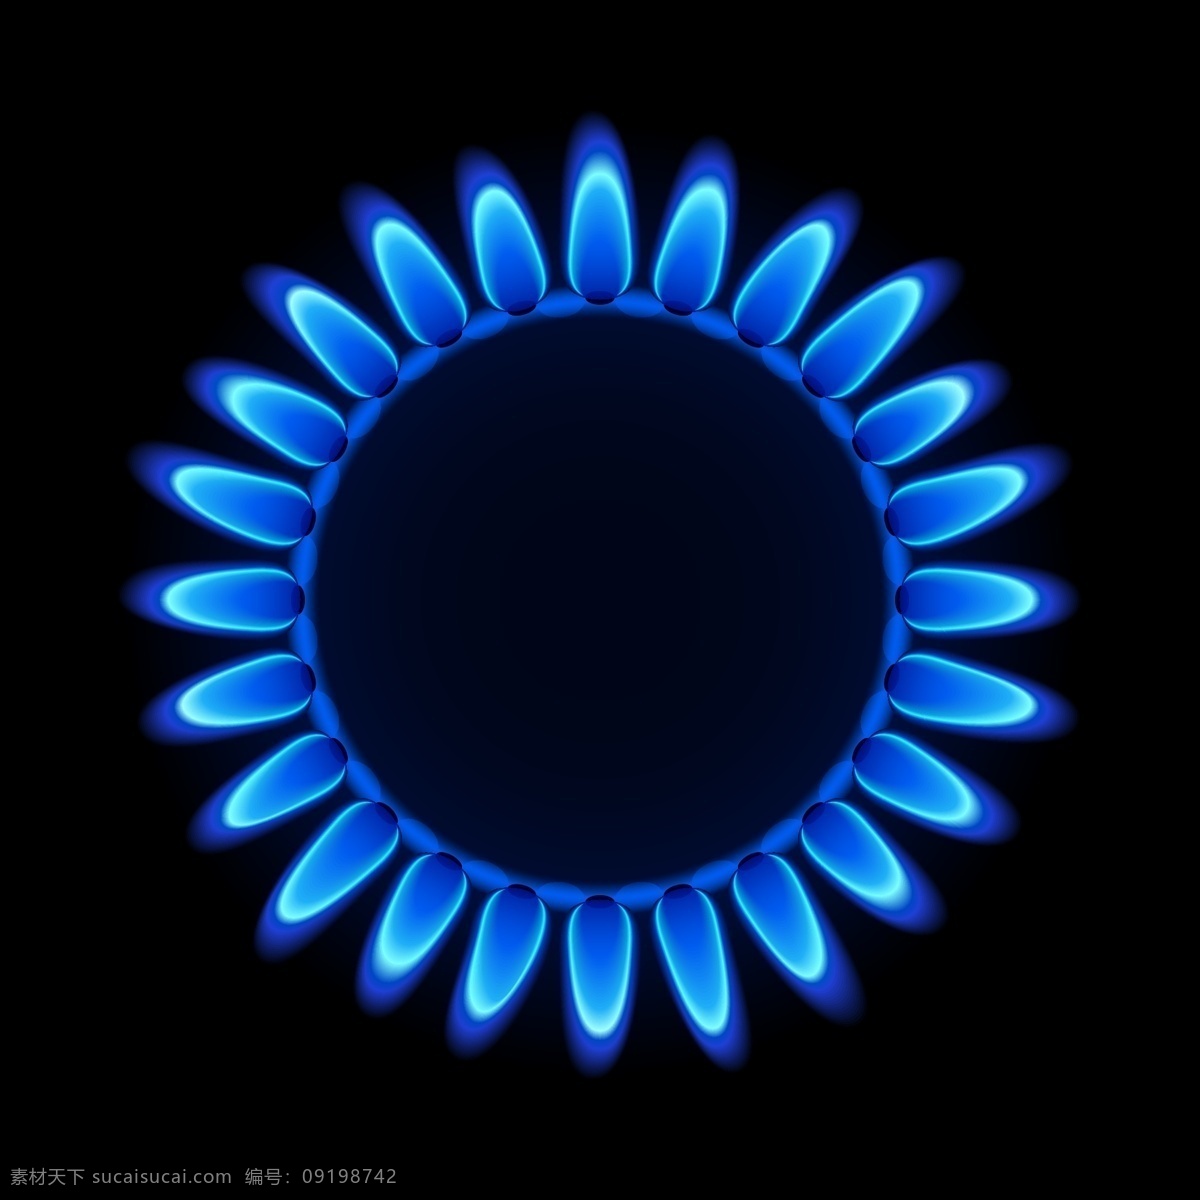 矢量 蓝色 火焰 背景图片素材 火焰背景 天然气 蓝色火苗 火环 煤气灶火焰